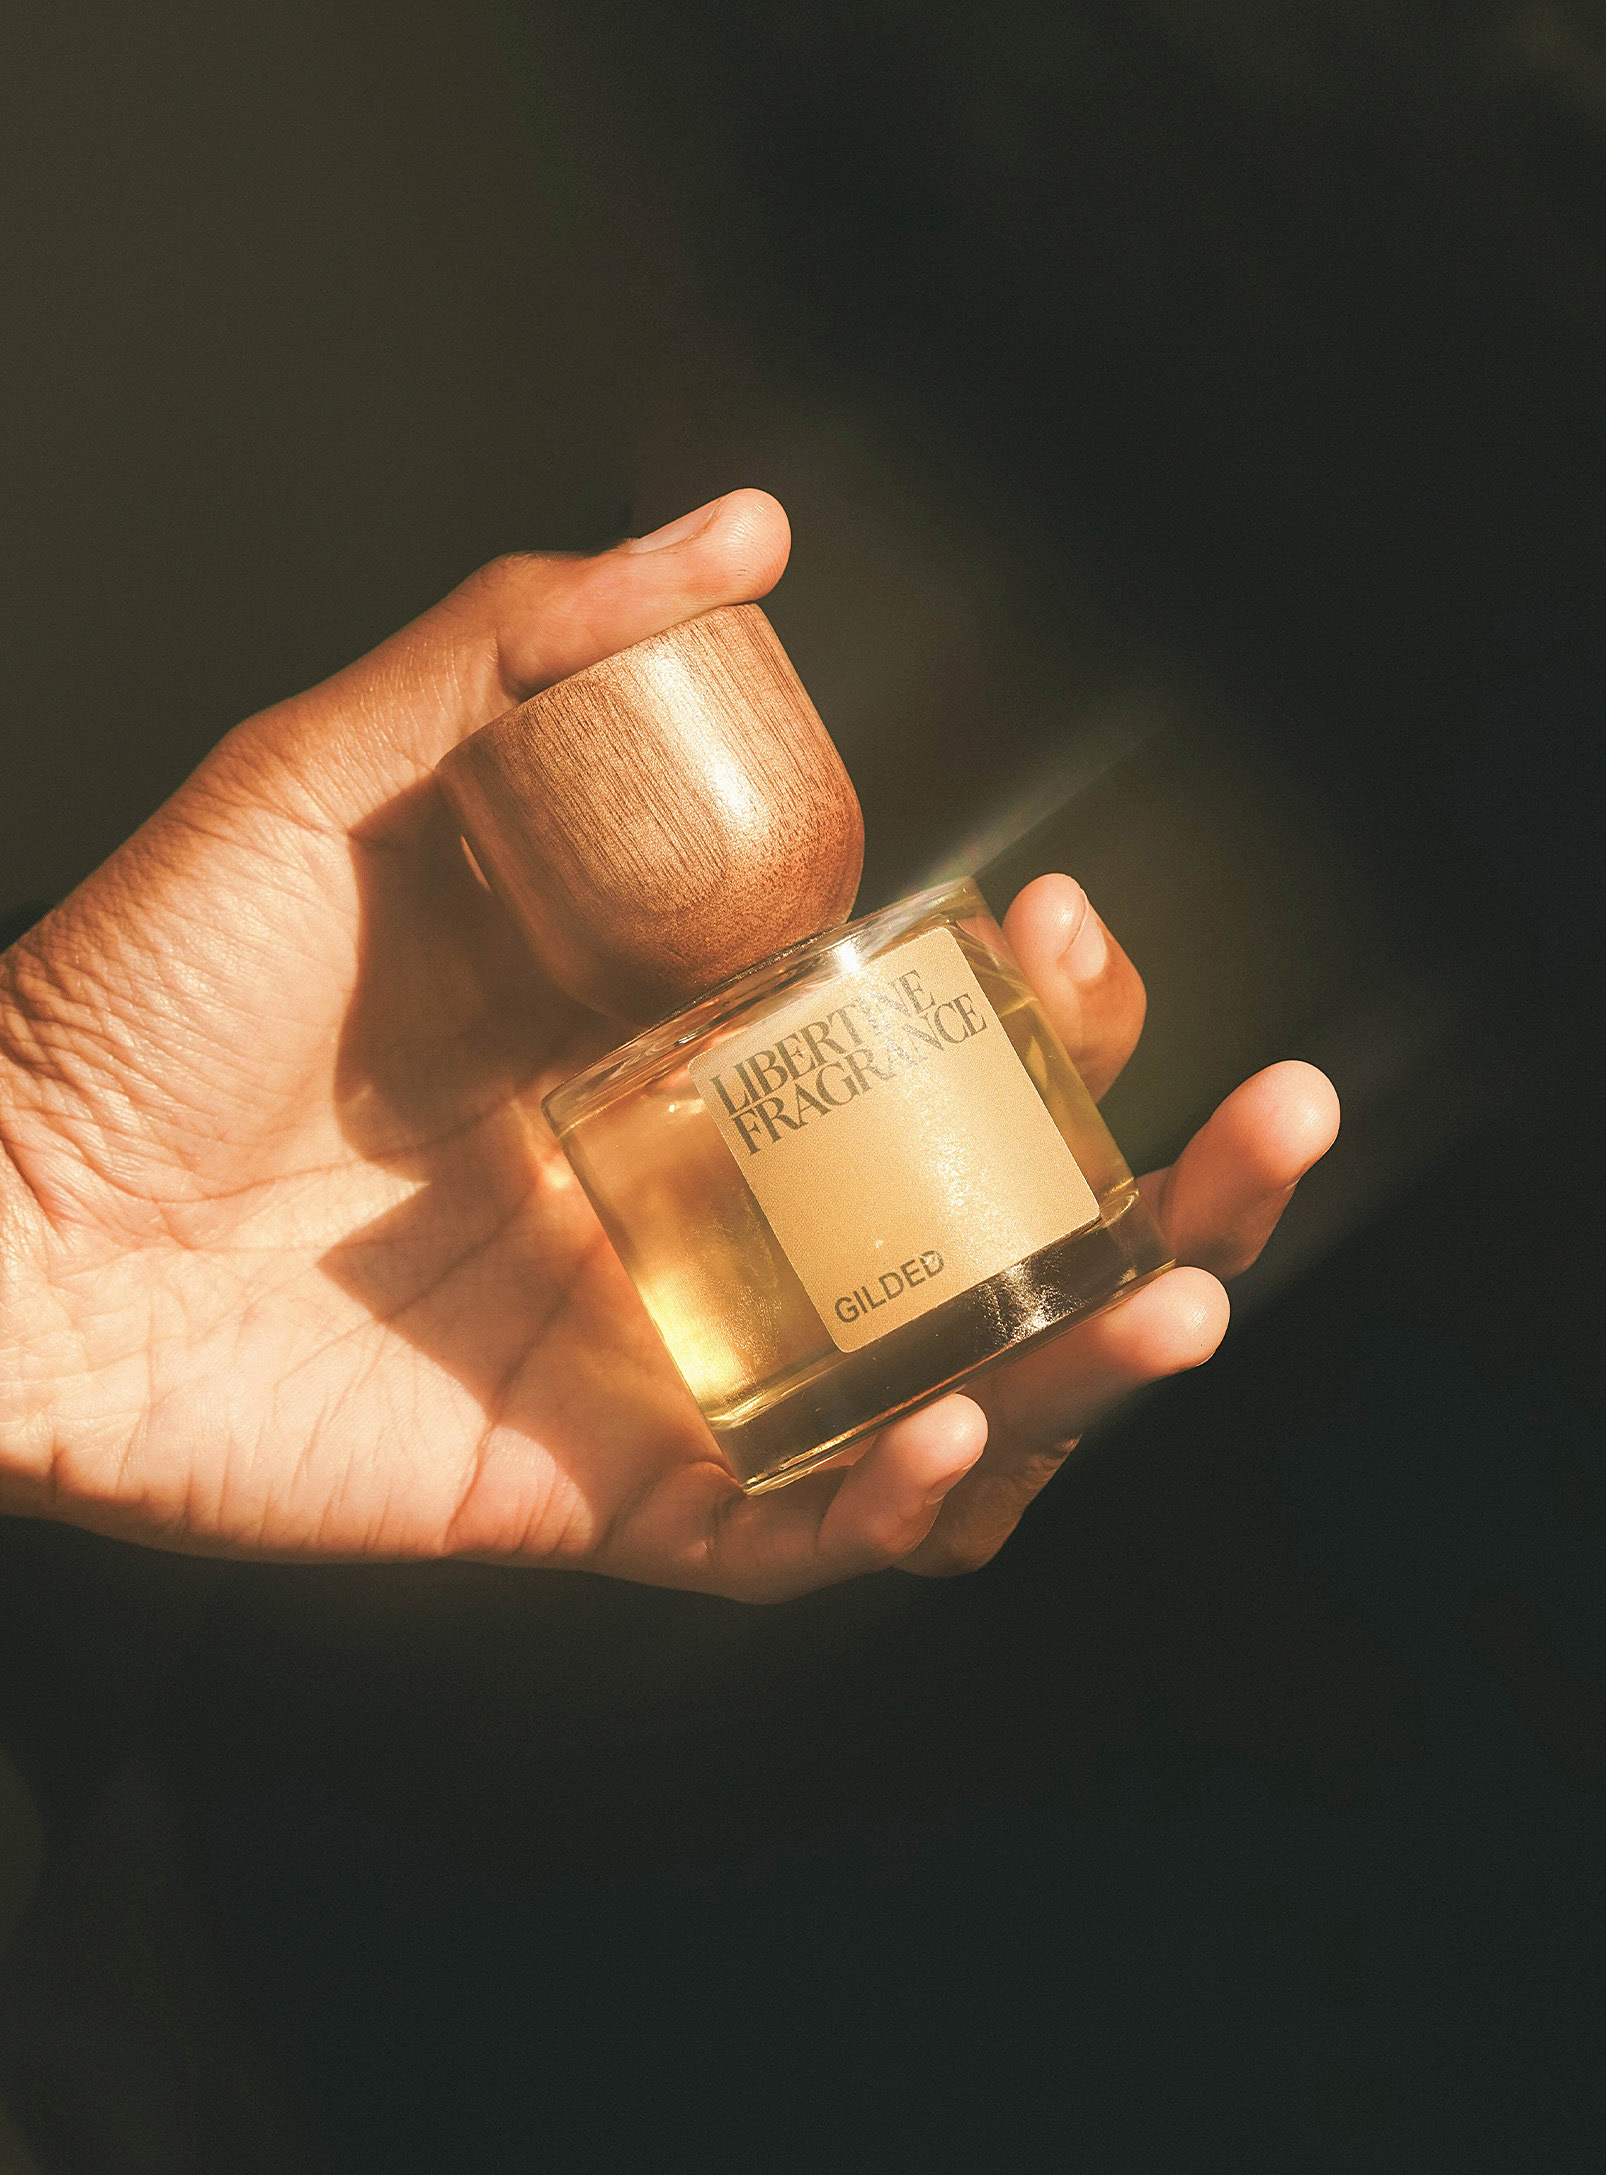 Libertine Fragrance - L'eau de parfum Gilded